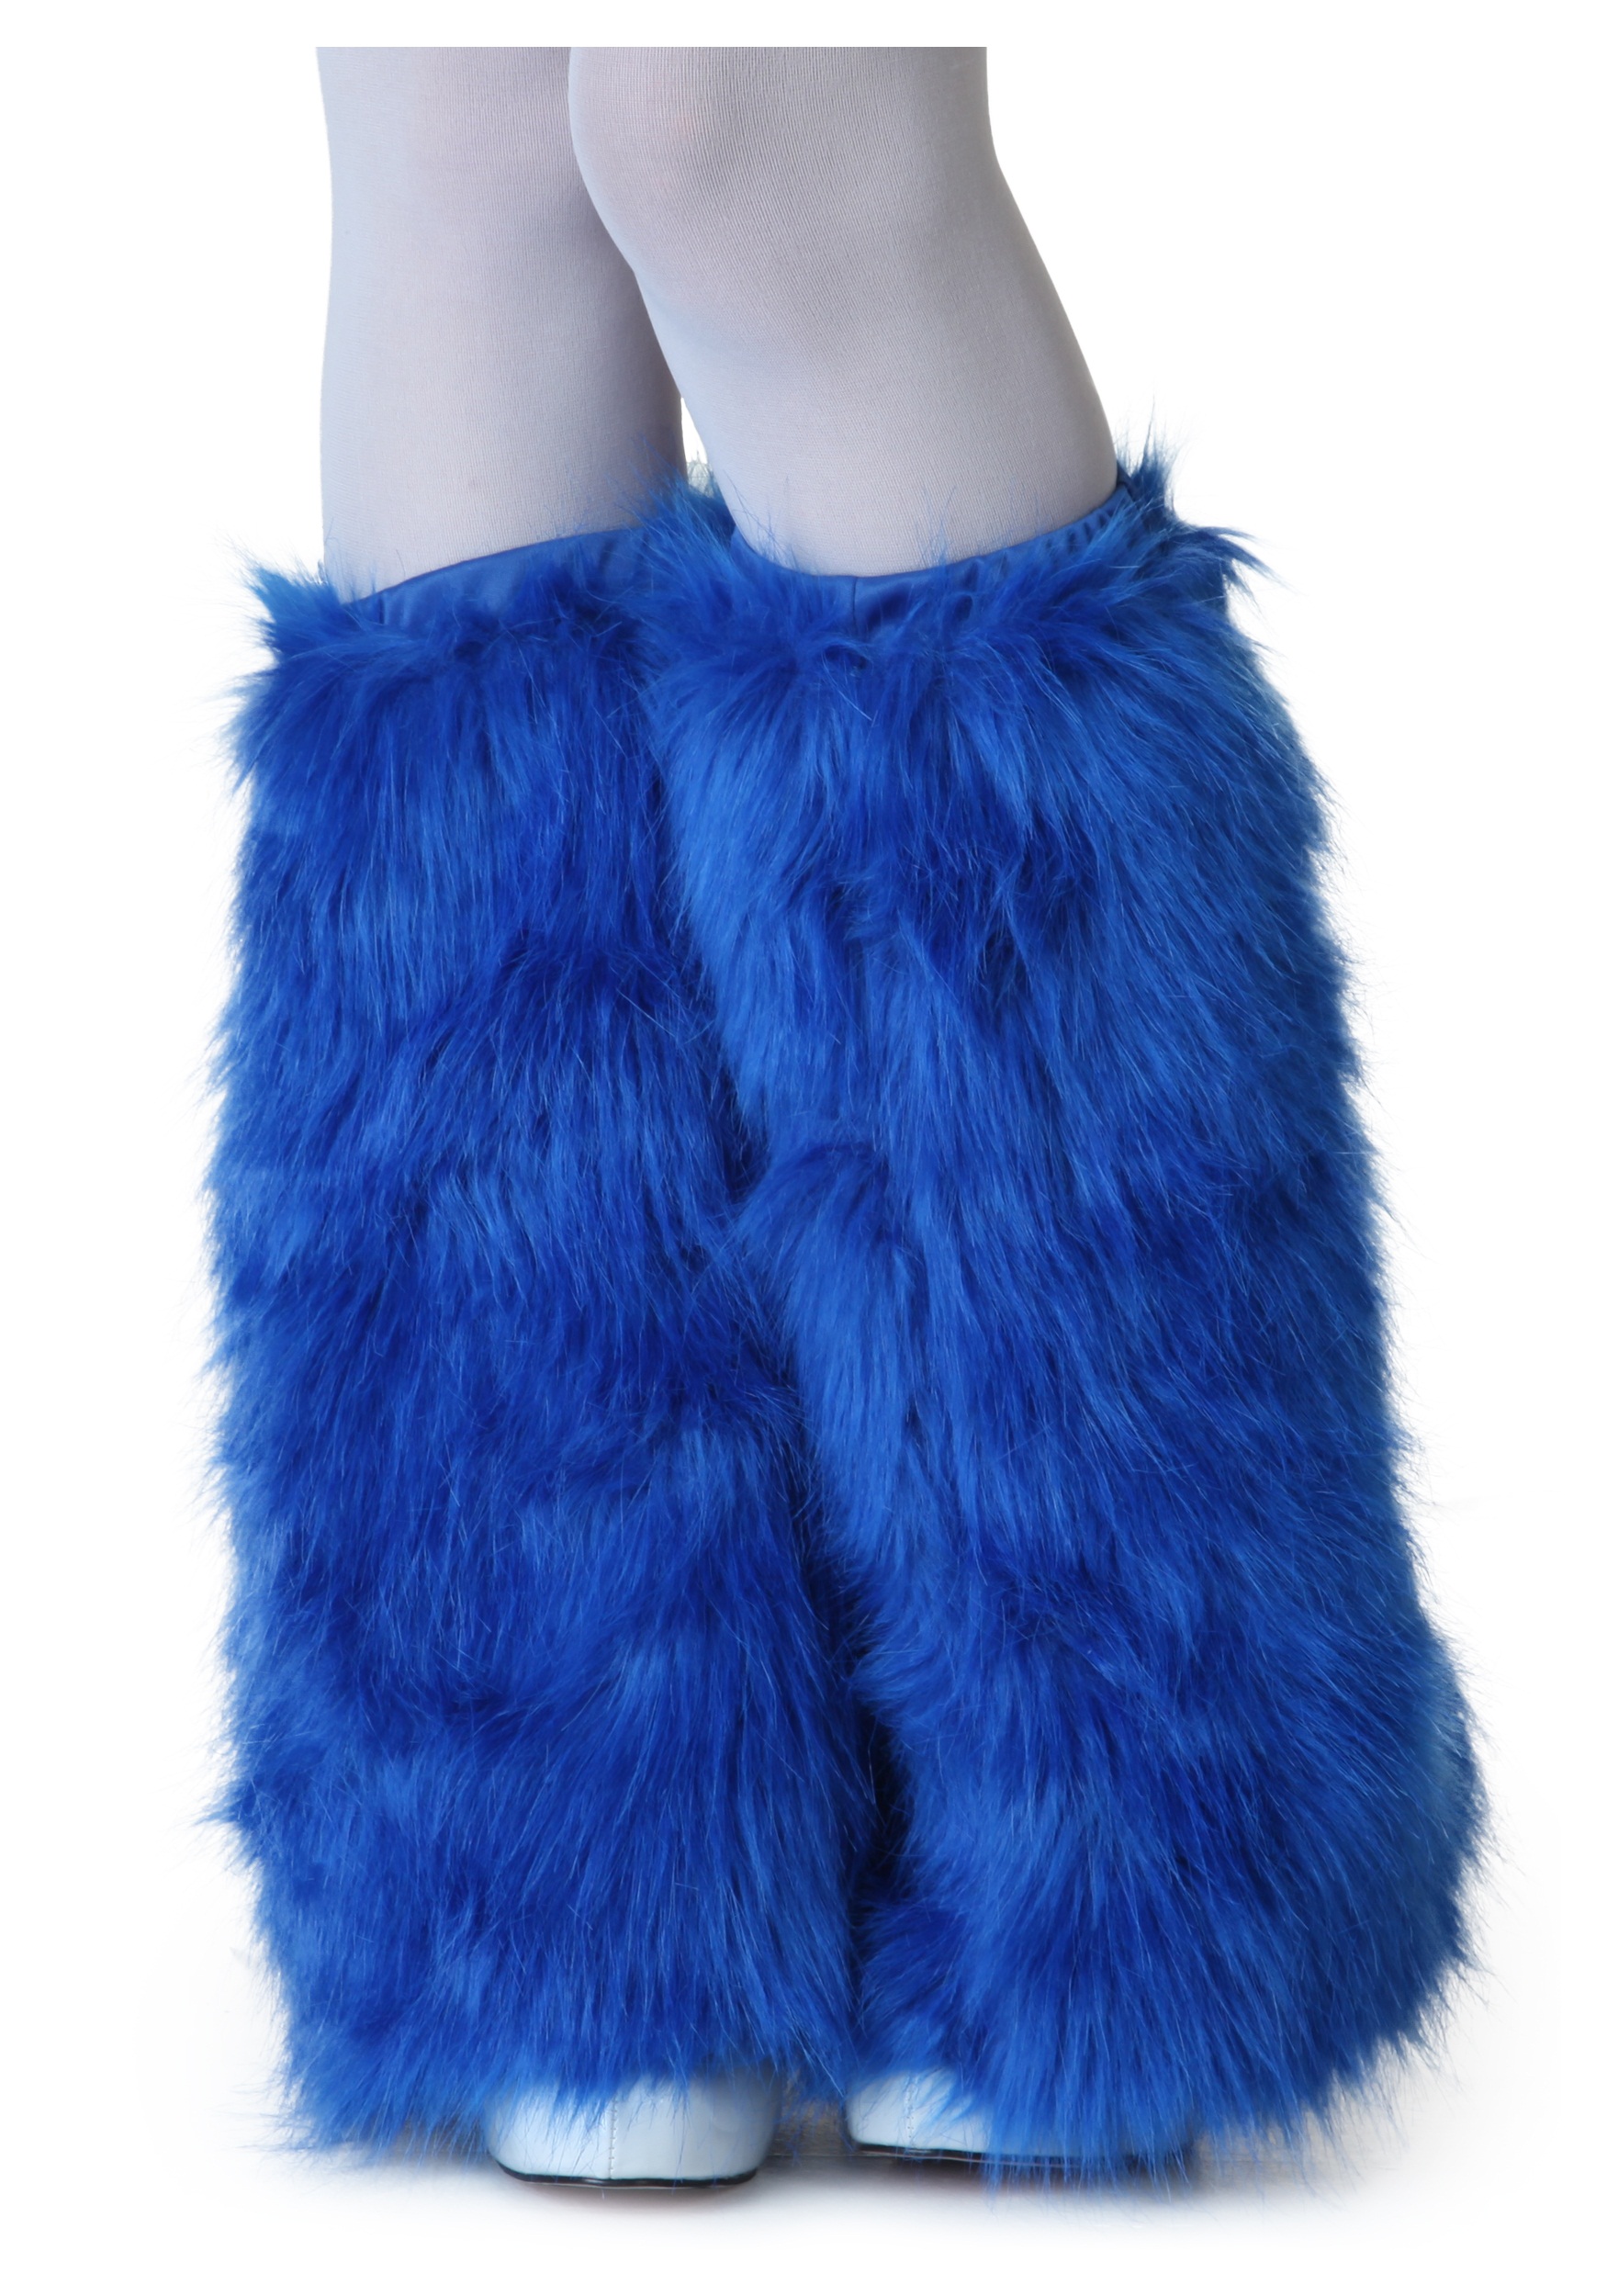 Cubiertas de botas peludas azules reales adultos Multicolor